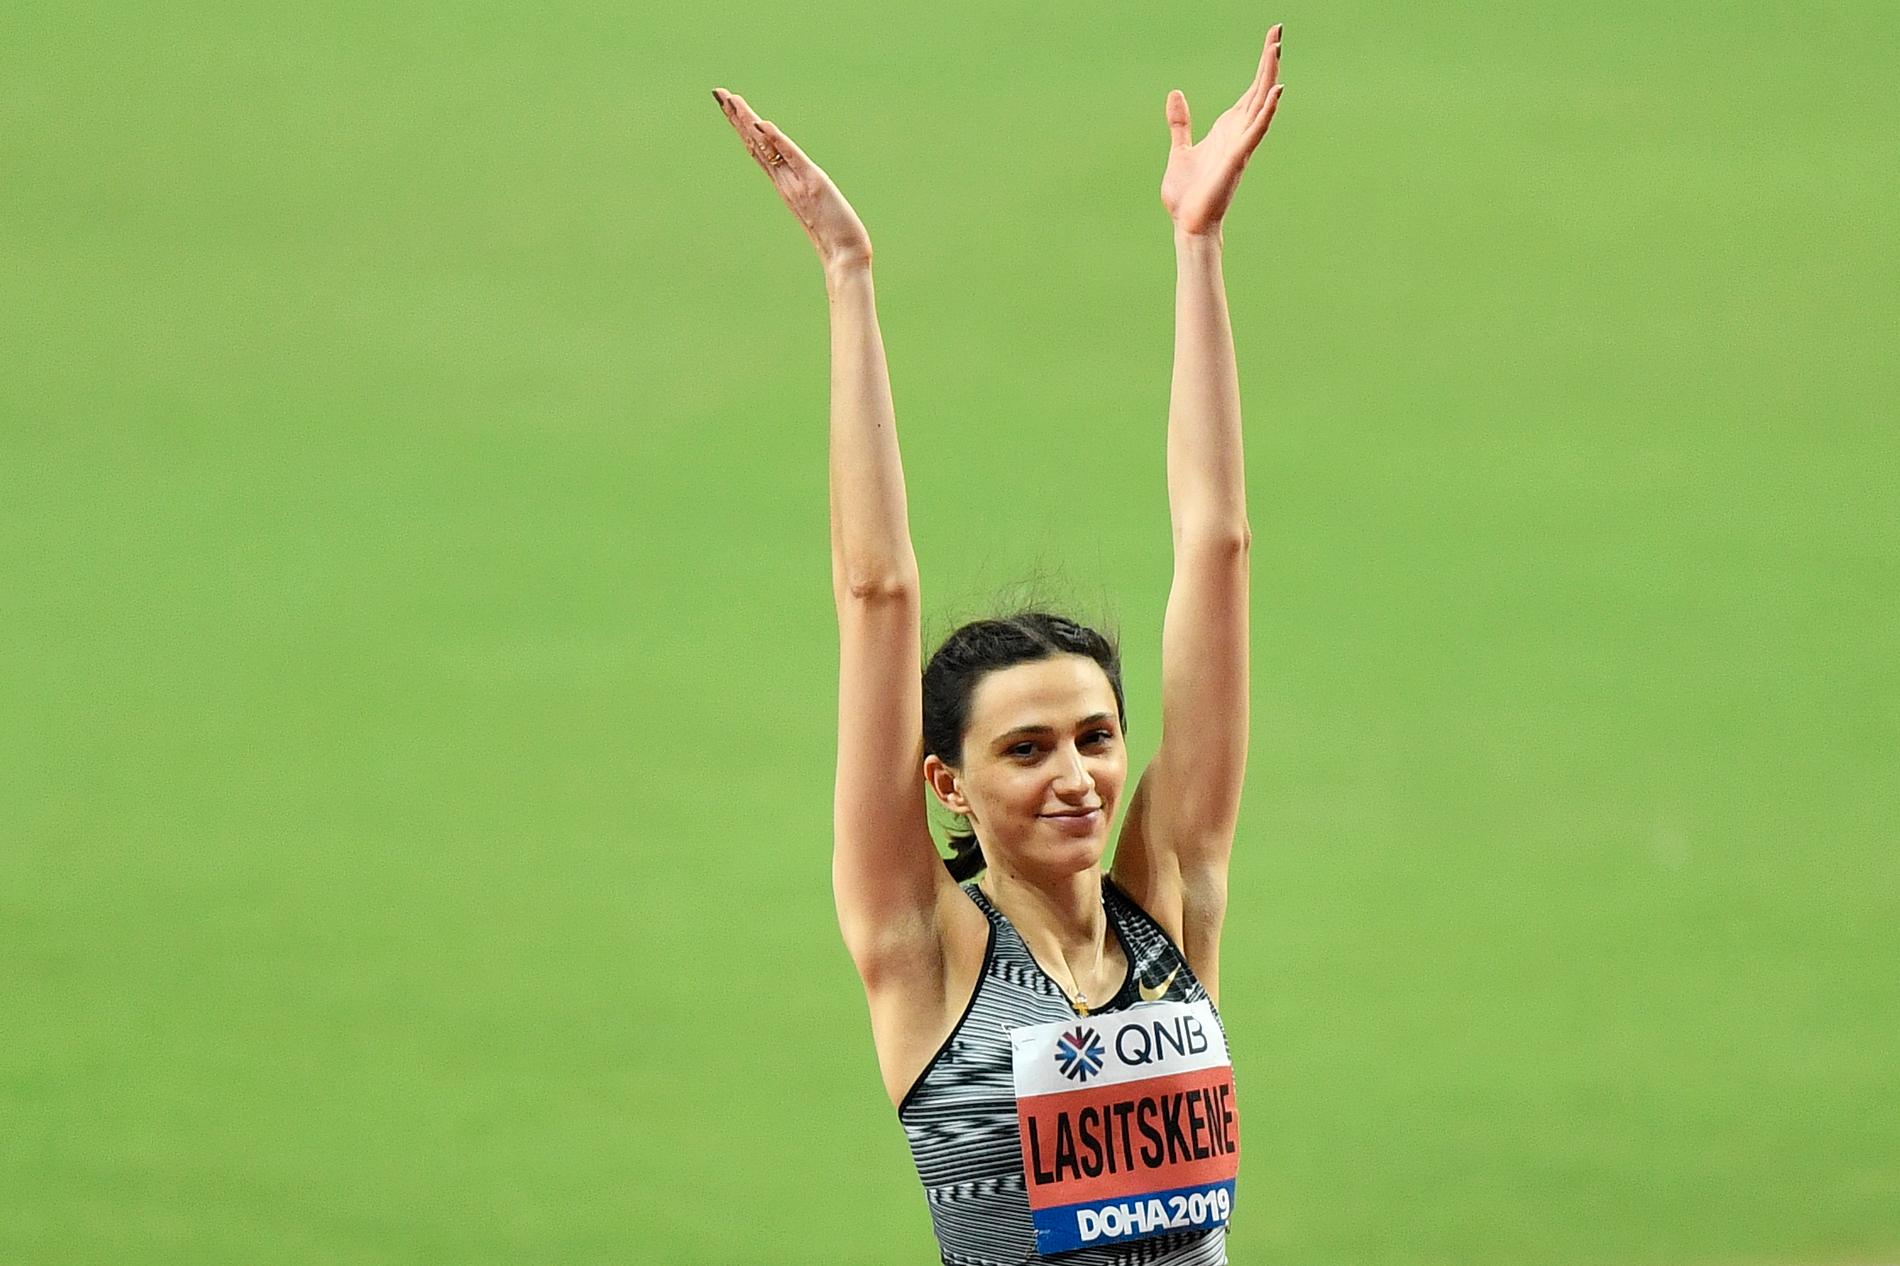 Den ryska höjdhoppsstjärnan Marija Lasitskene tog VM-guld i Doha 2019 under neutral flagg. Arkivbild.